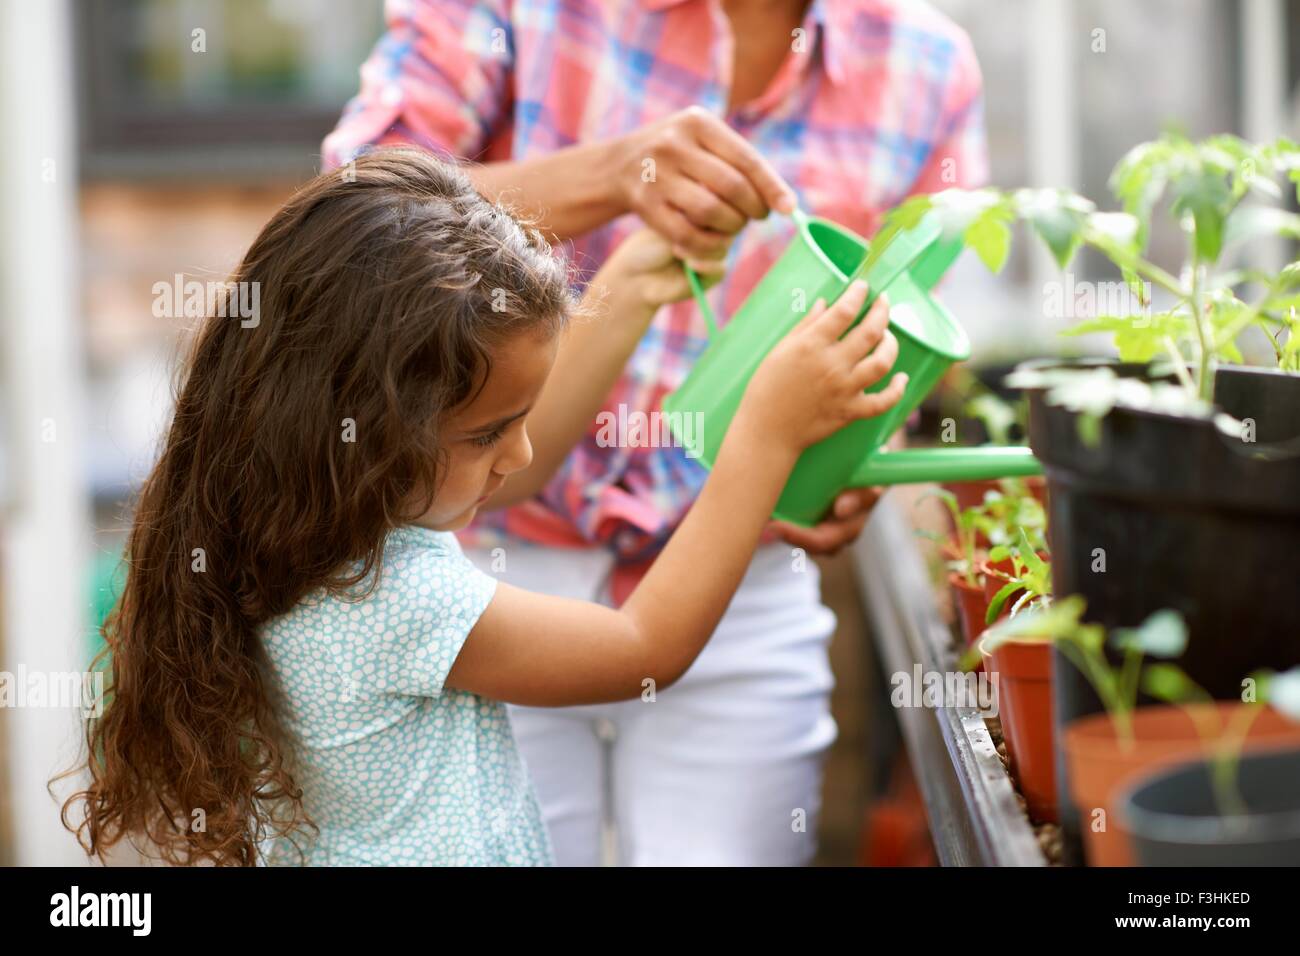 Fille et Mid adult woman arroser les plants in greenhouse Banque D'Images